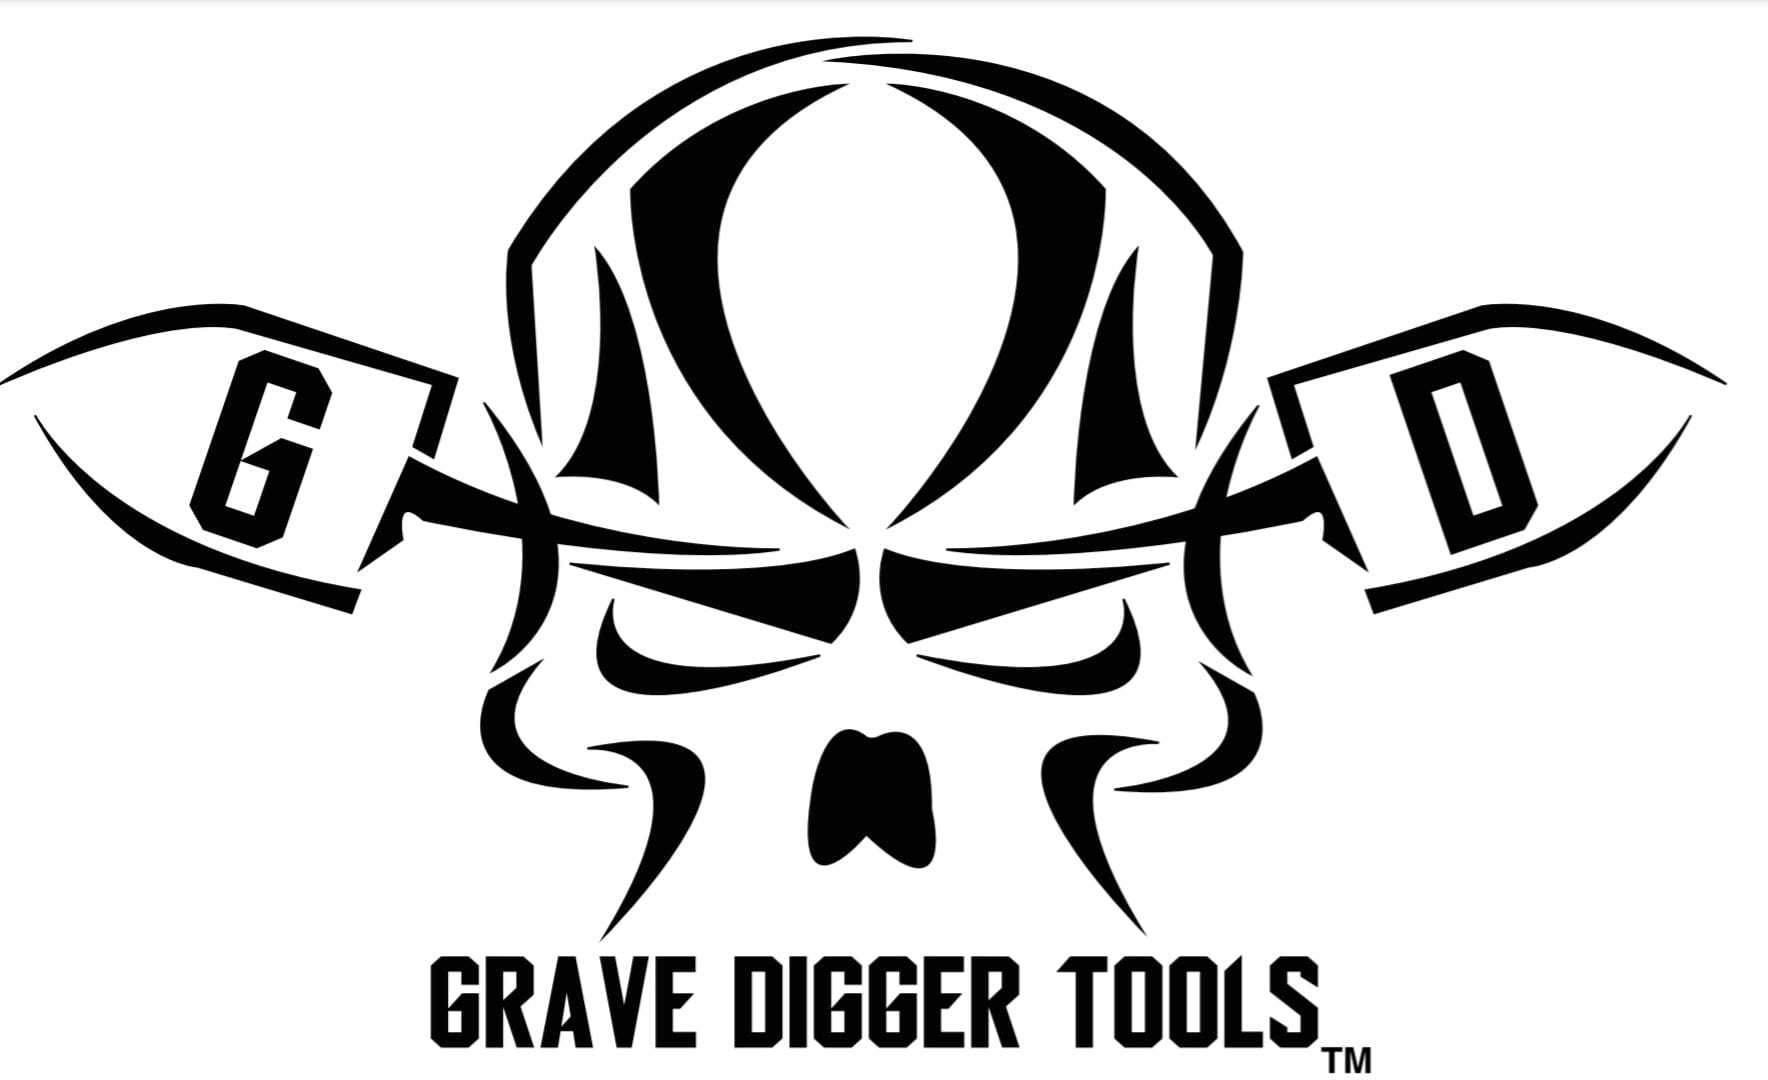 Gravedigger Tools